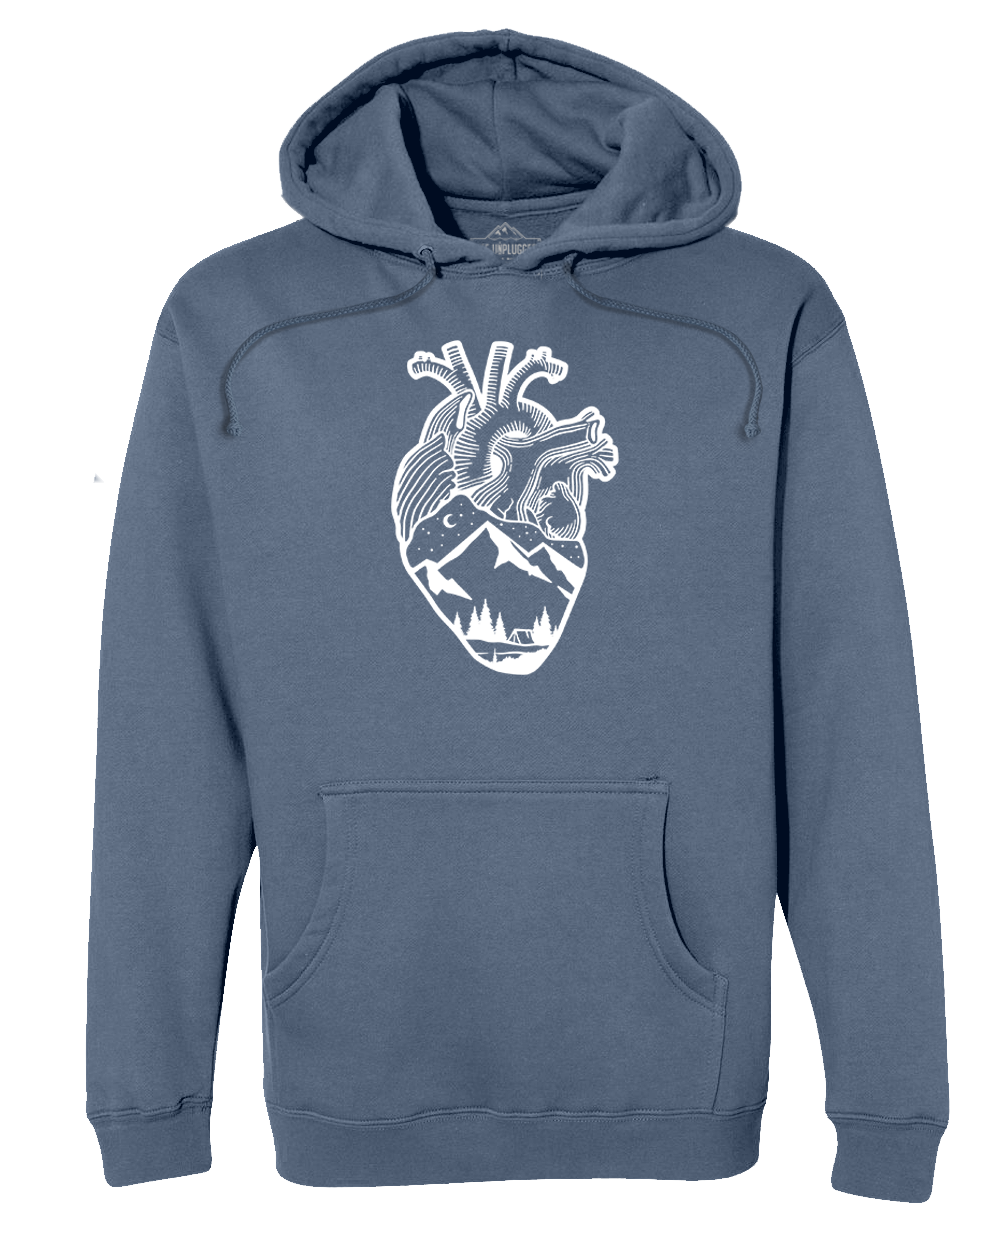 ANATOMICAL HEART (FULL CHEST) Premium Heavyweight Hooded Sweatshirt